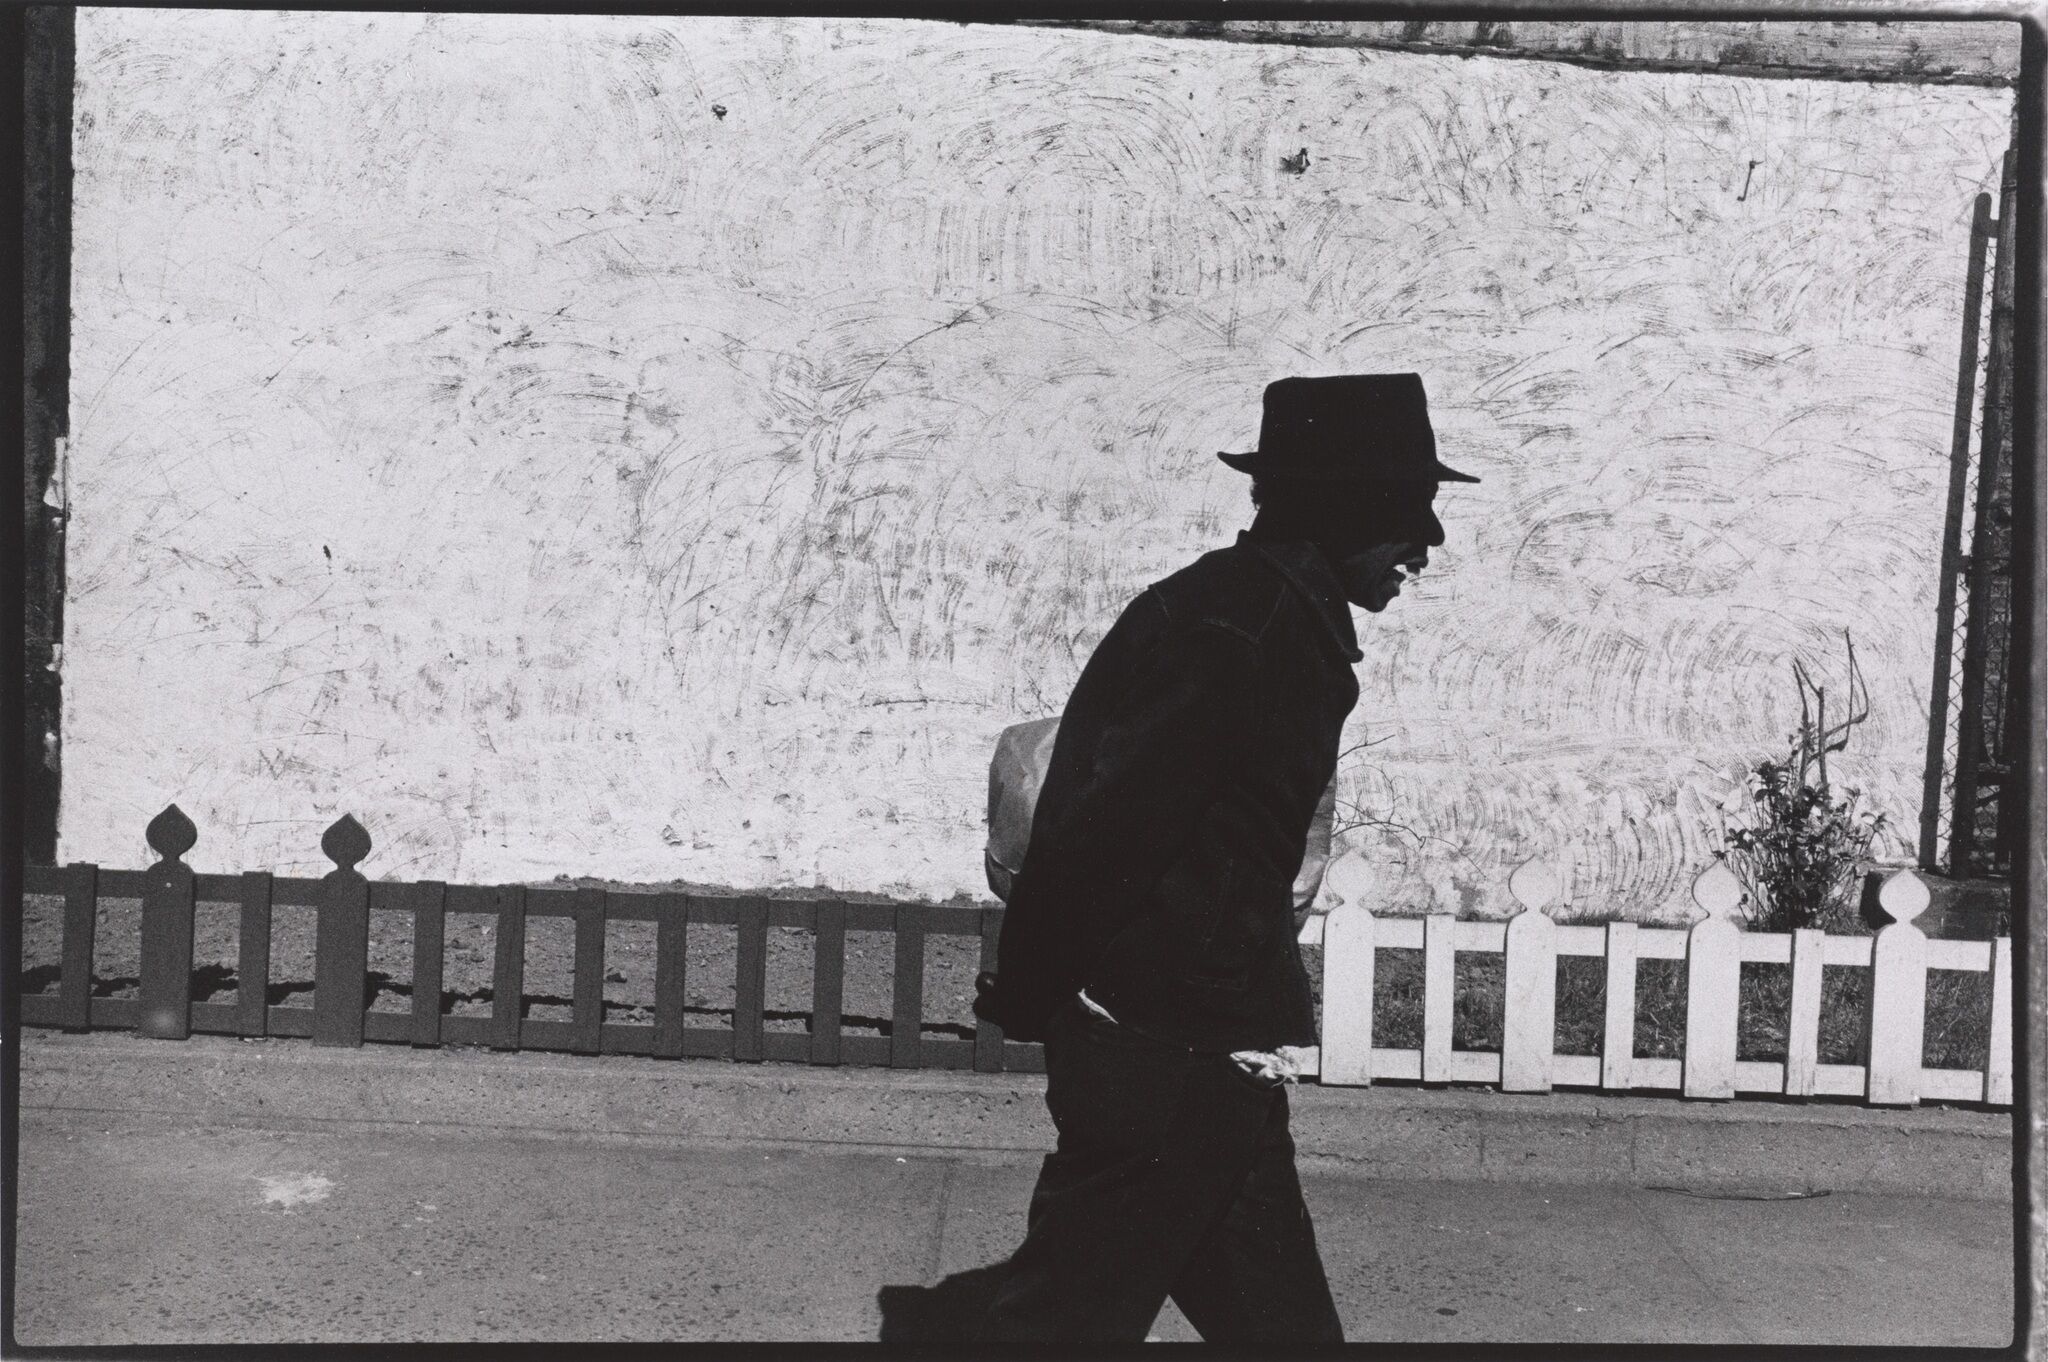 A man wearing a hat walking down a street.